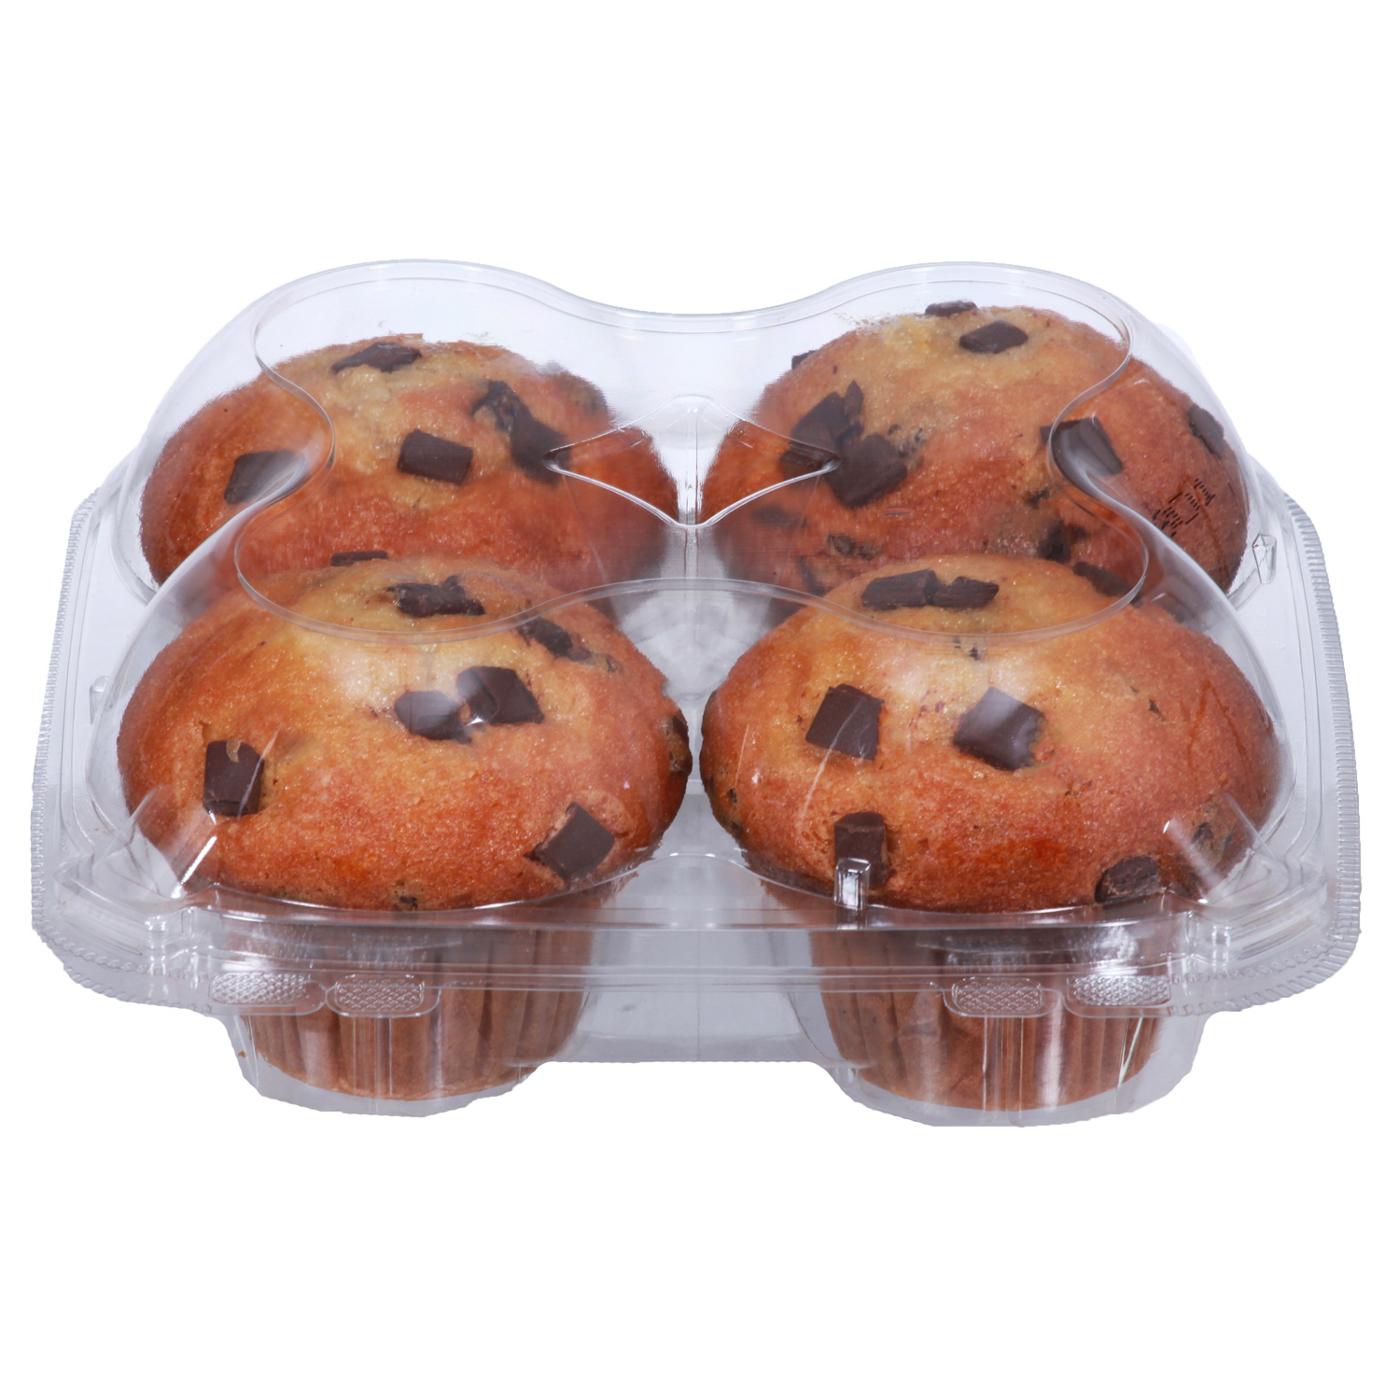 H-E-B Bakery Chocolate Chunk Muffins; image 2 of 2